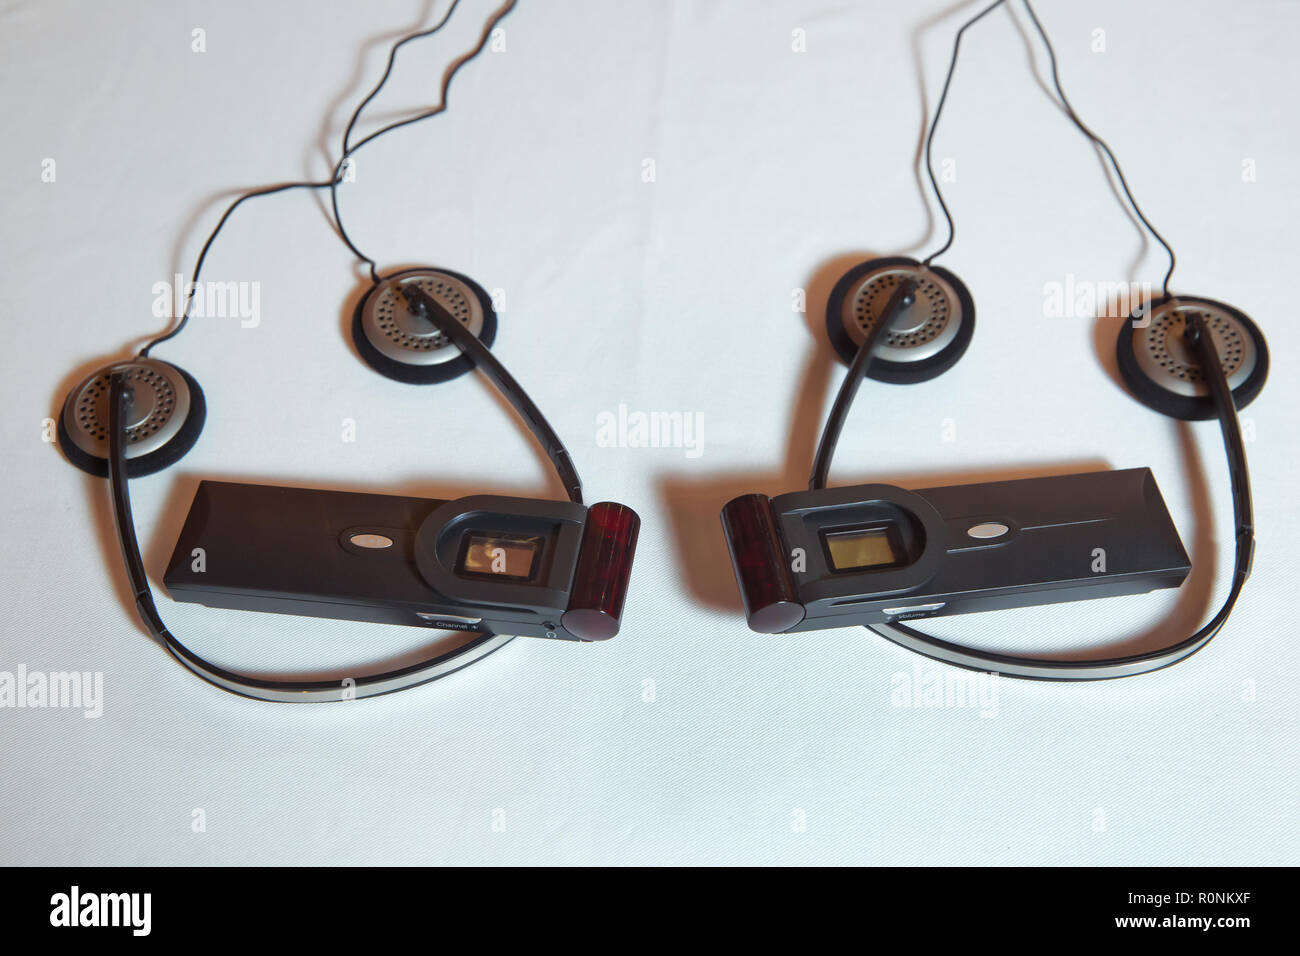 Estos auriculares inalámbricos ofrecen traducción simultánea